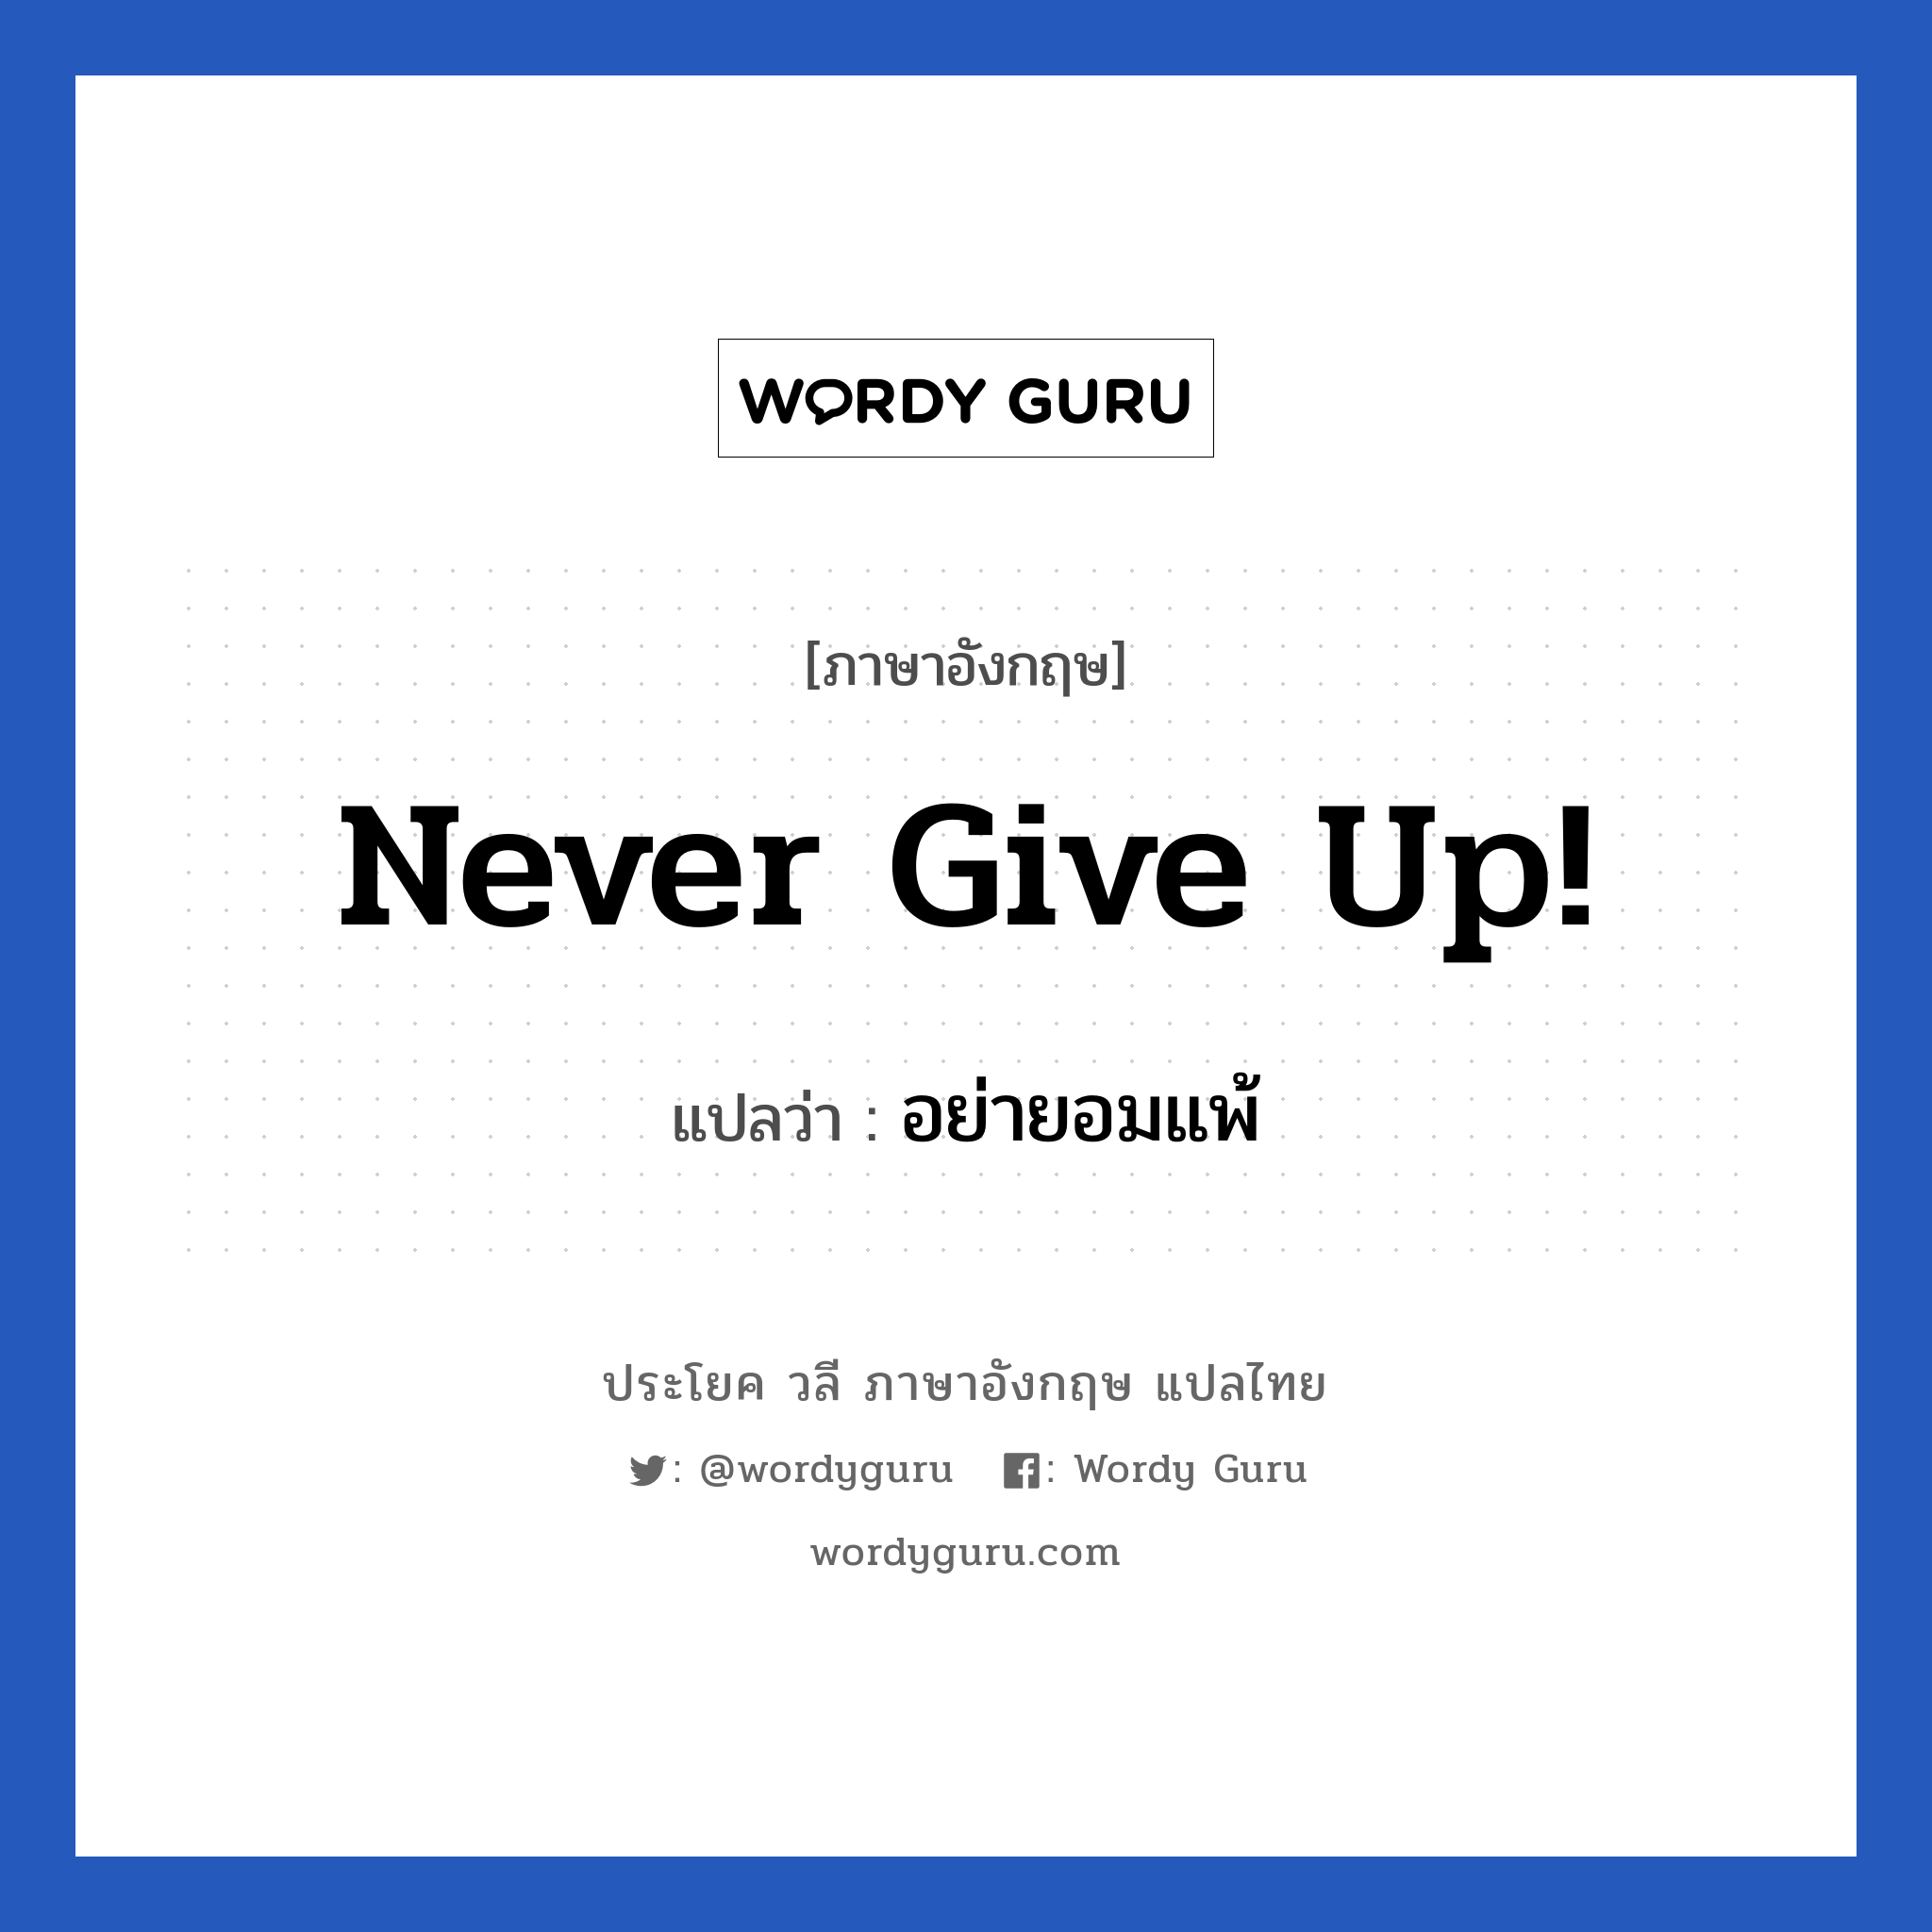 Never give up! แปลว่า? เป็นประโยคในกลุ่มประเภท ให้กำลังใจ, วลีภาษาอังกฤษ Never give up! แปลว่า อย่ายอมแพ้ หมวด ให้กำลังใจ